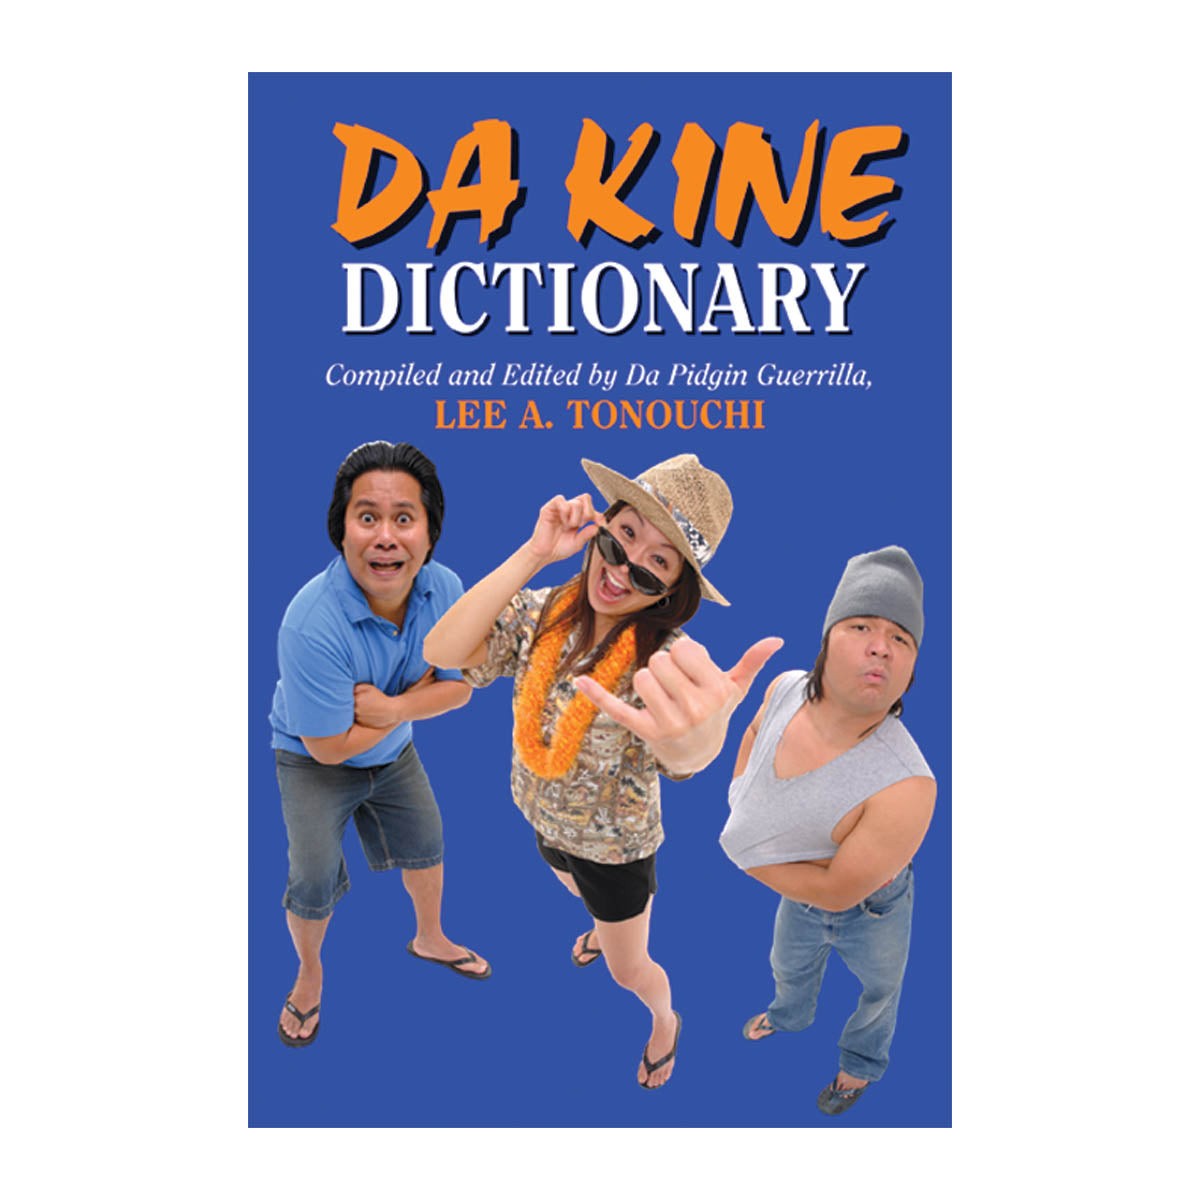 Da Kine Dictionary